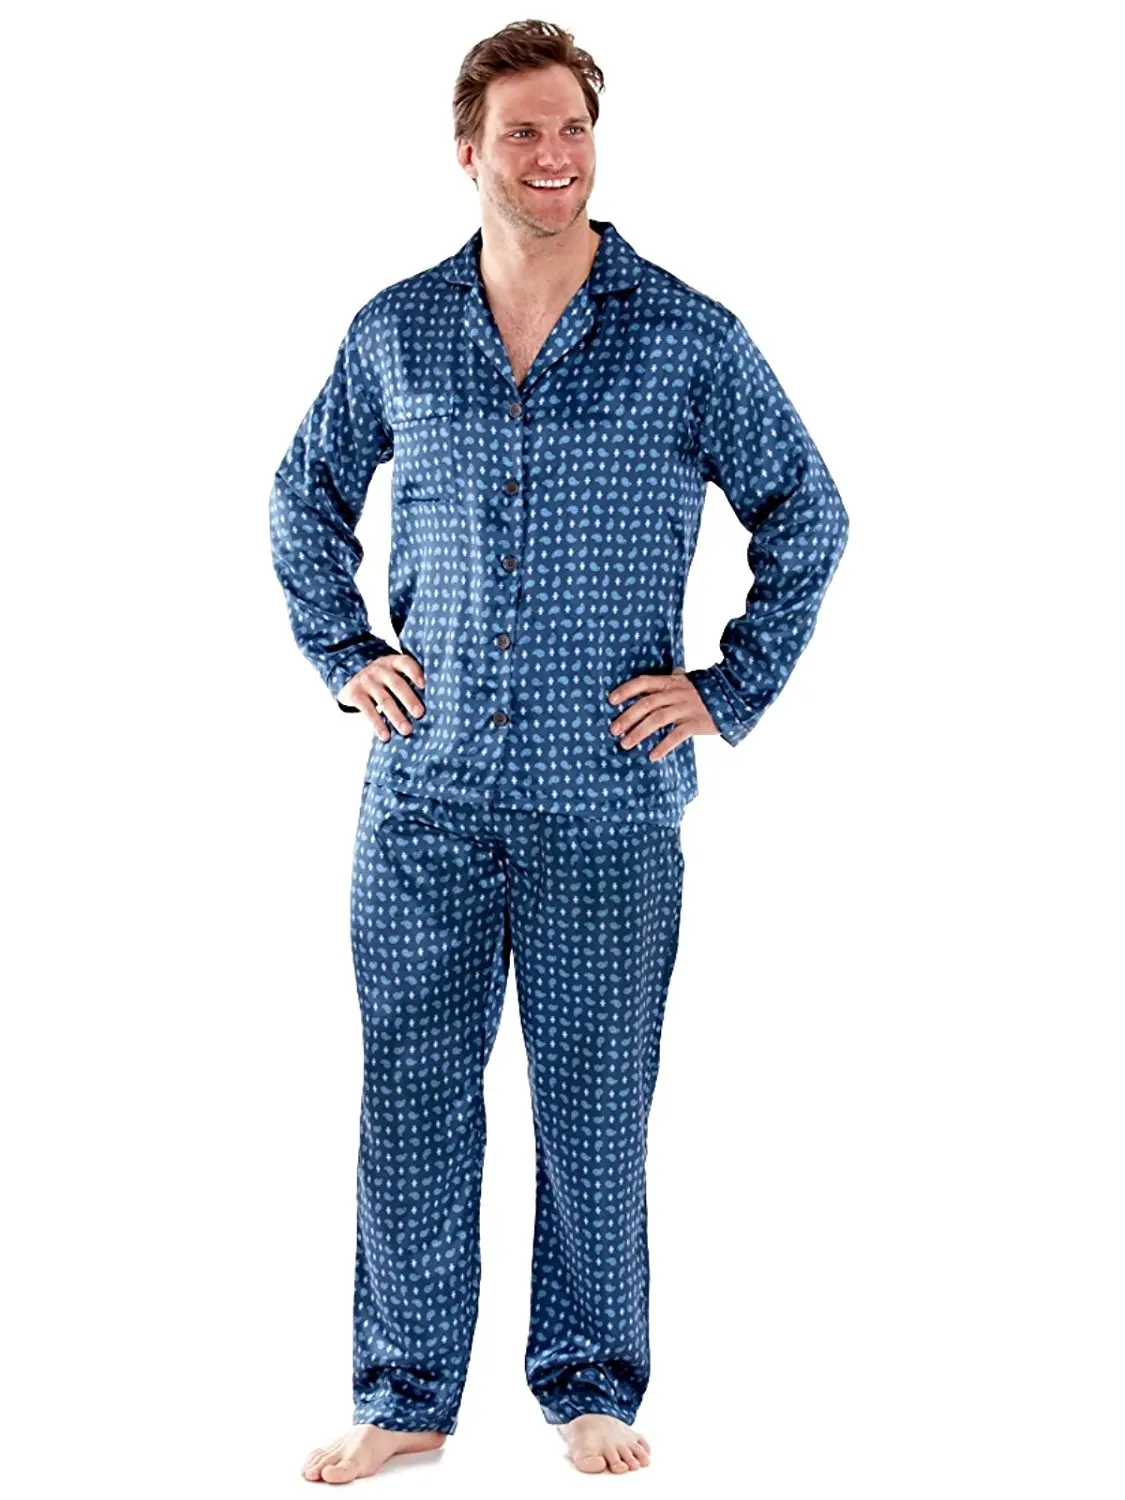 Cheap Xxl Mens Pyjamas, find Xxl Mens Pyjamas deals on line at Alibaba.com